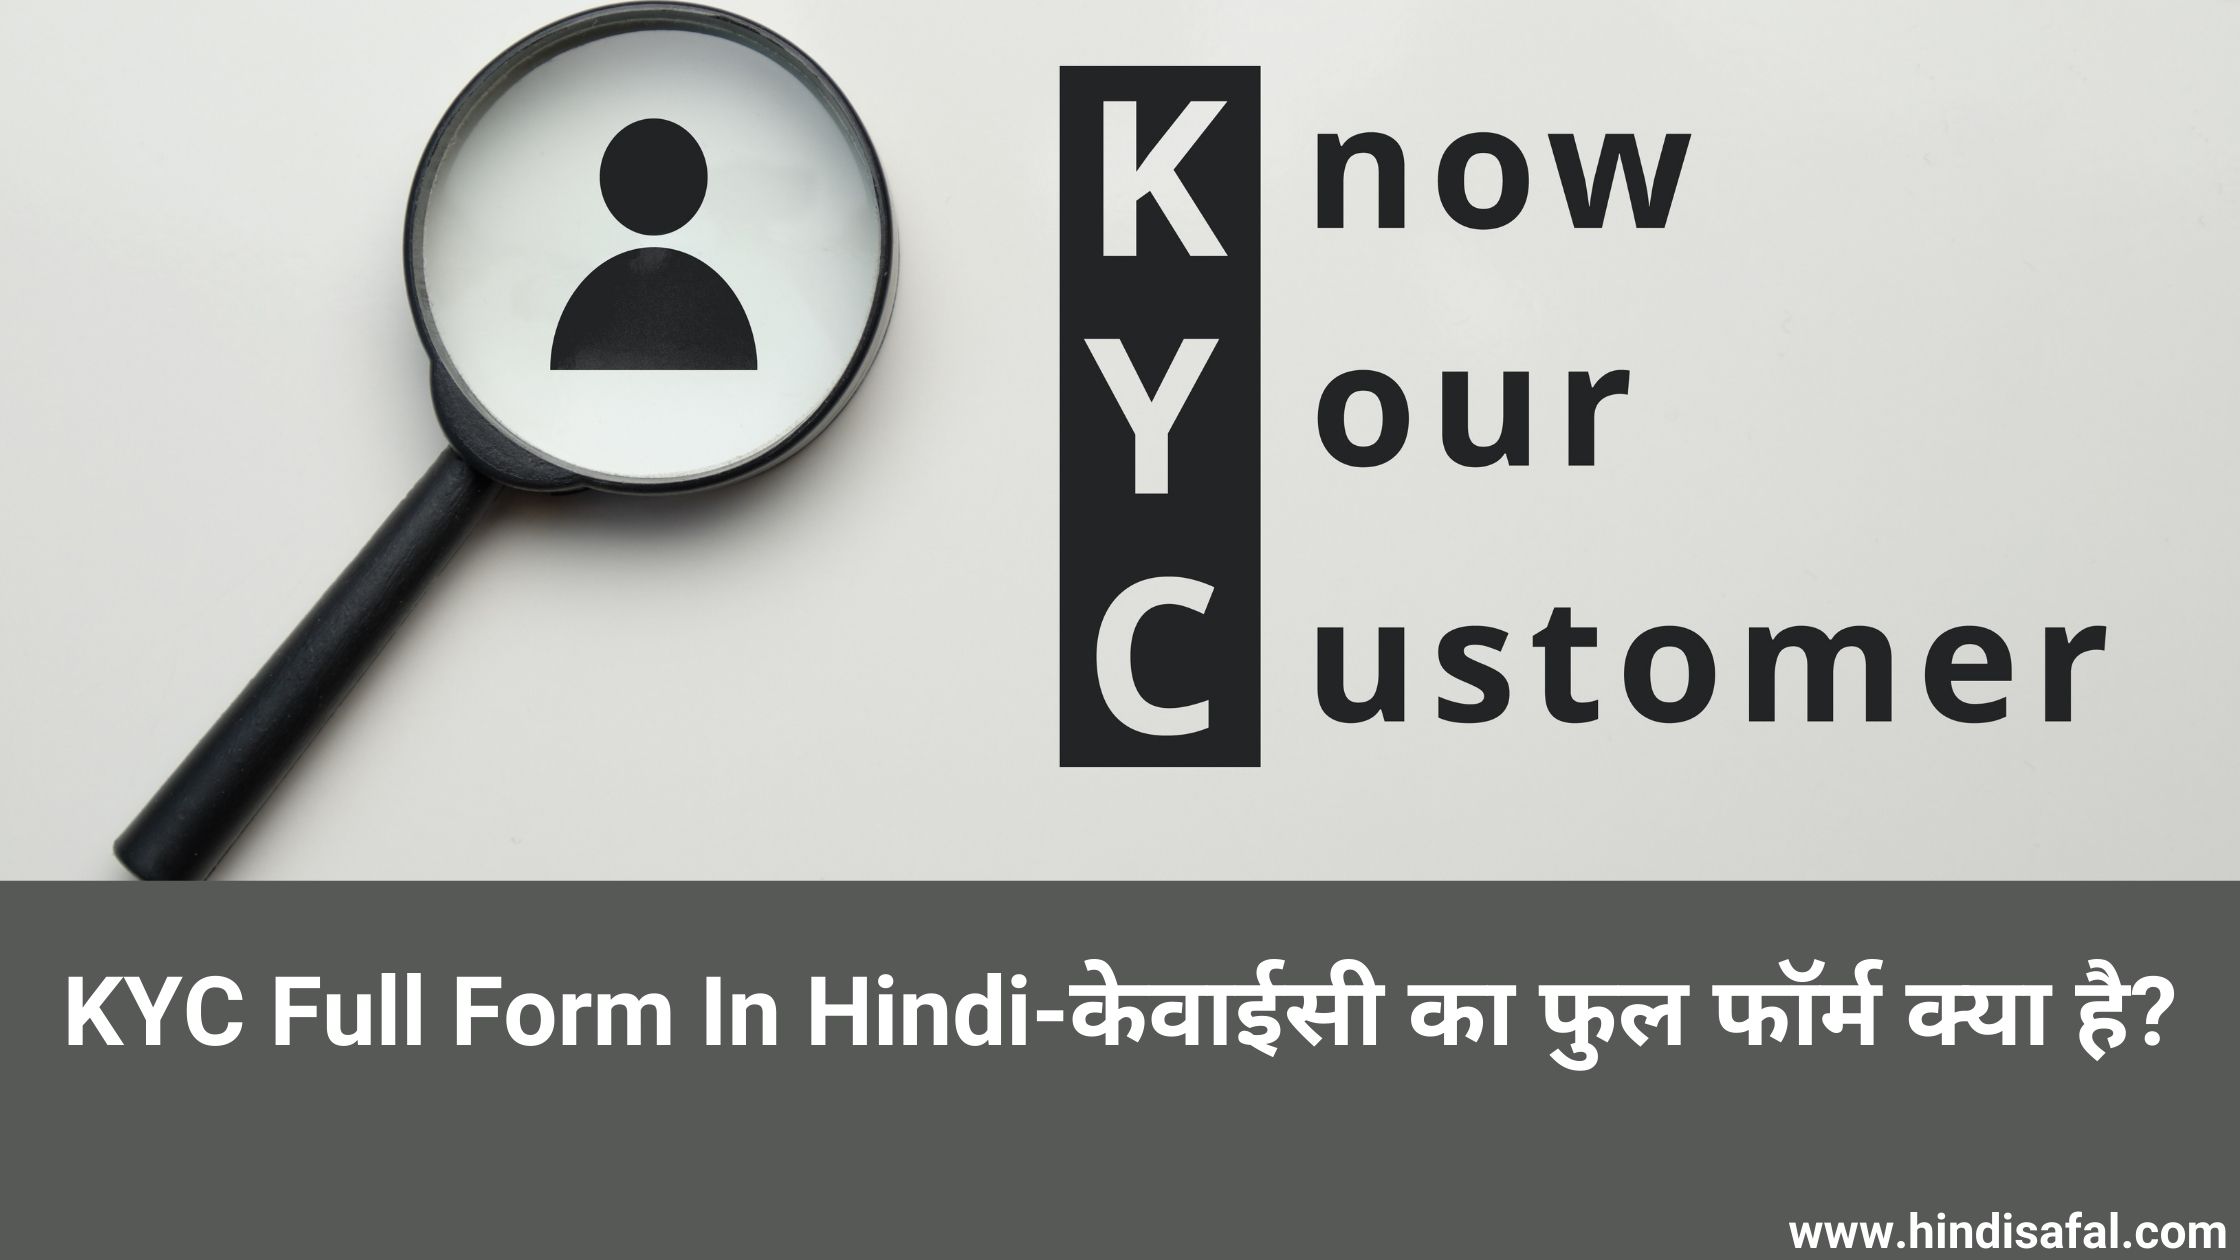 KYC Full Form In Hindi-केवाईसी का फुल फॉर्म क्या है?